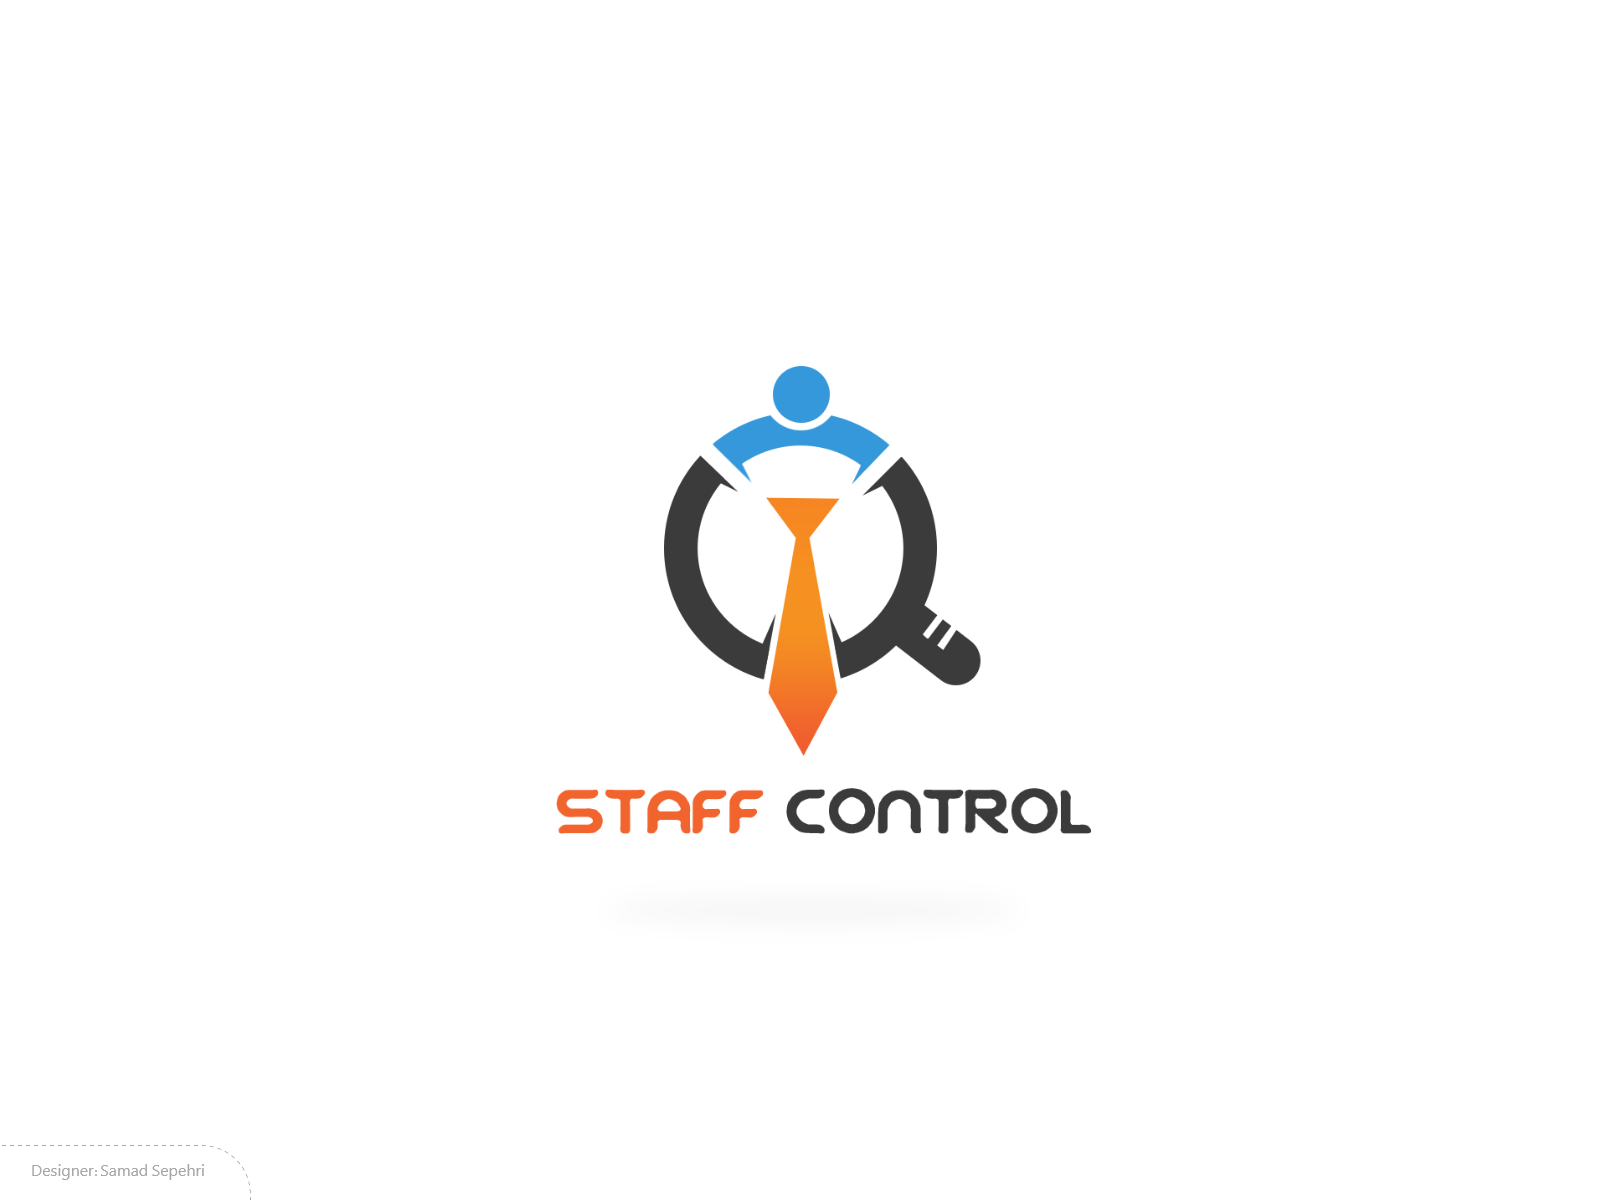 لوگو کنترل کارمندان و خانواده staff-control